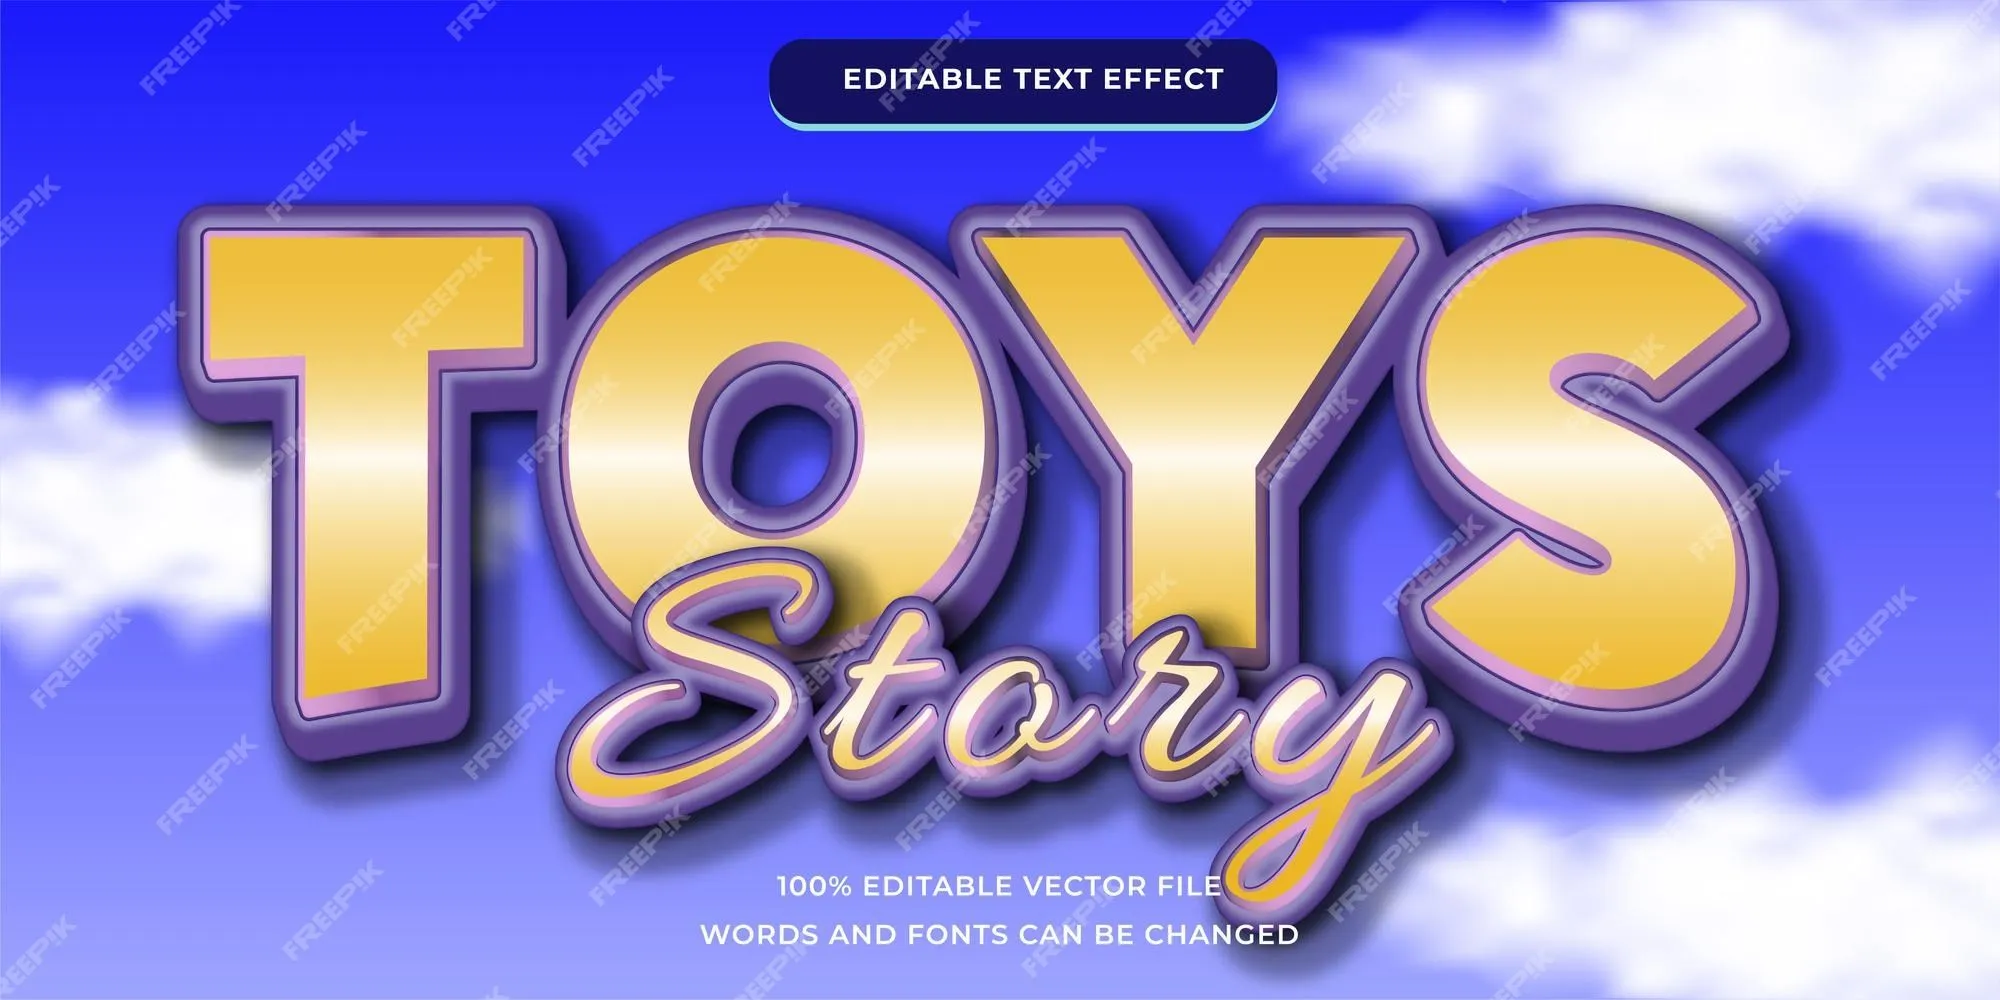 Toy story efecto de texto editable moderno | Vector Premium